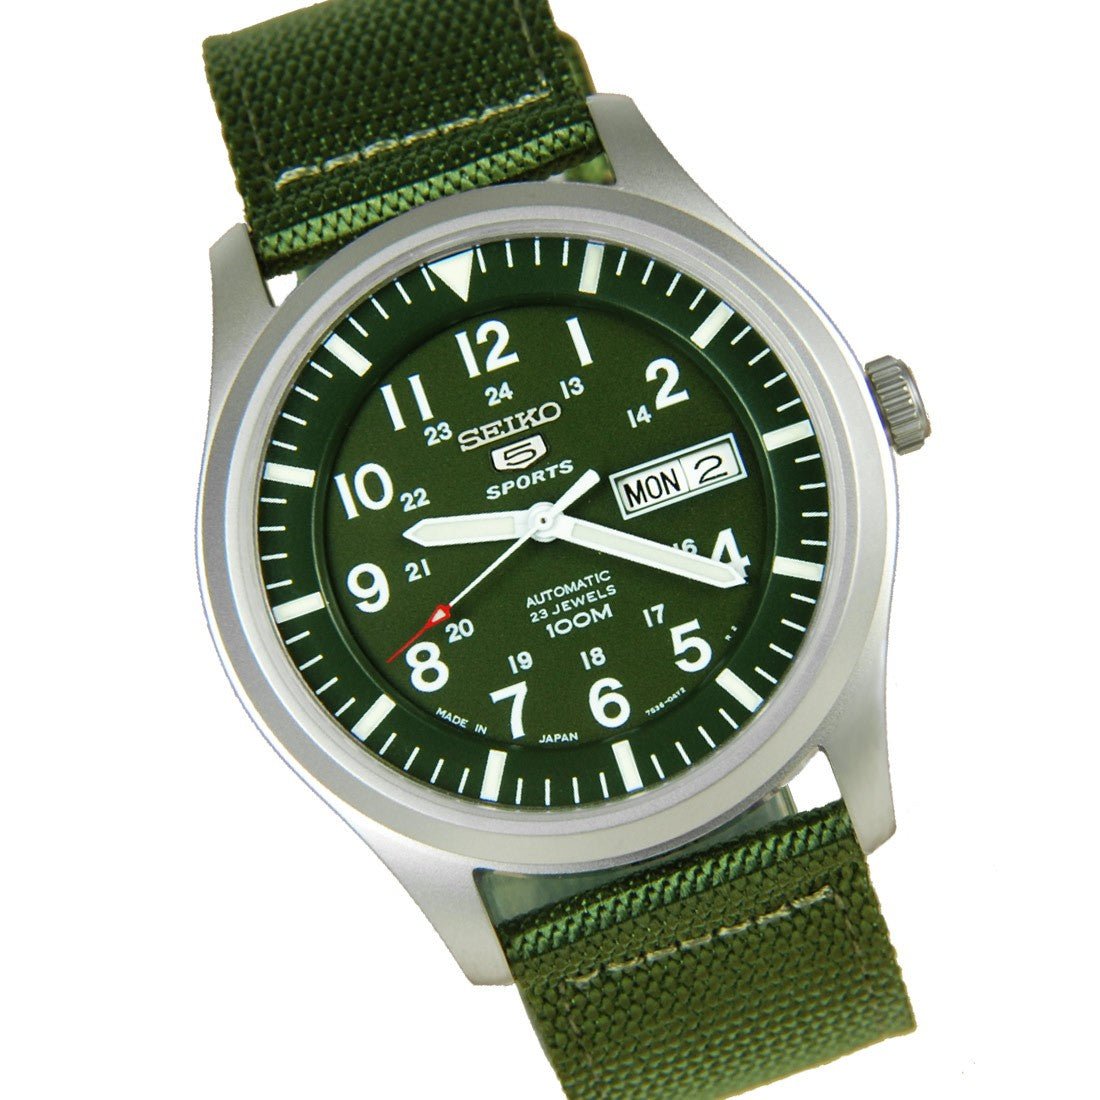 Seiko 5 Military SNZG09J1 SNZG09 SNZG09J Green Nylon Watch -Seiko